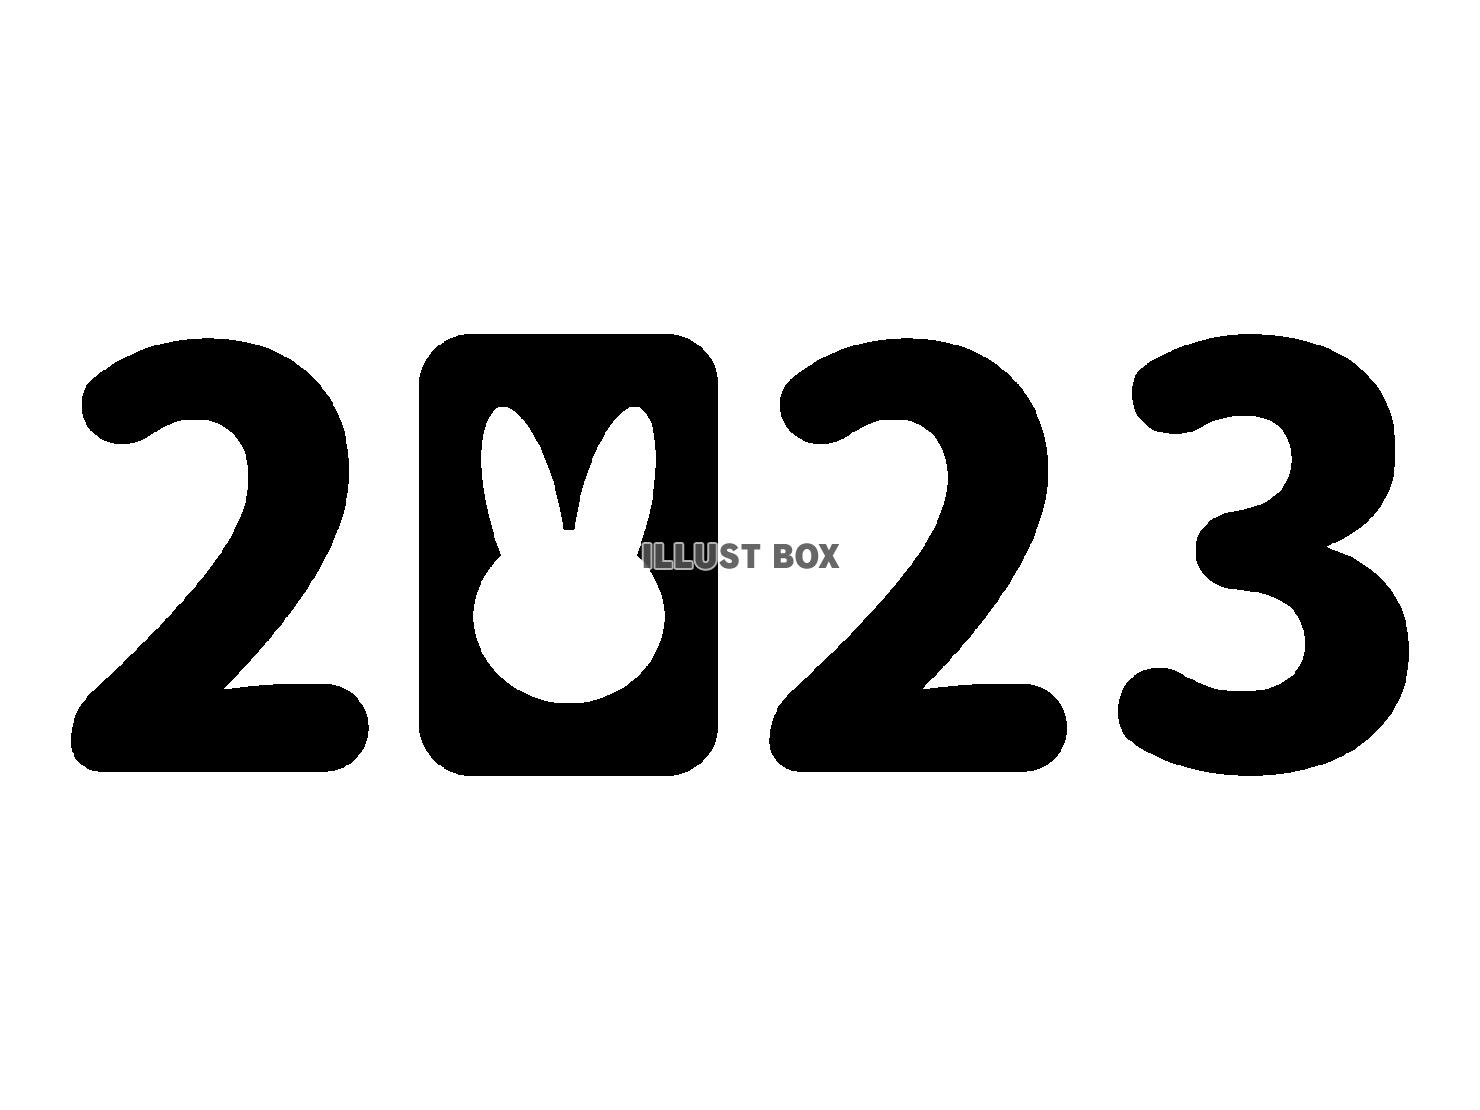 2023年卯年・年賀状素材のロゴ【PNG・EPS】